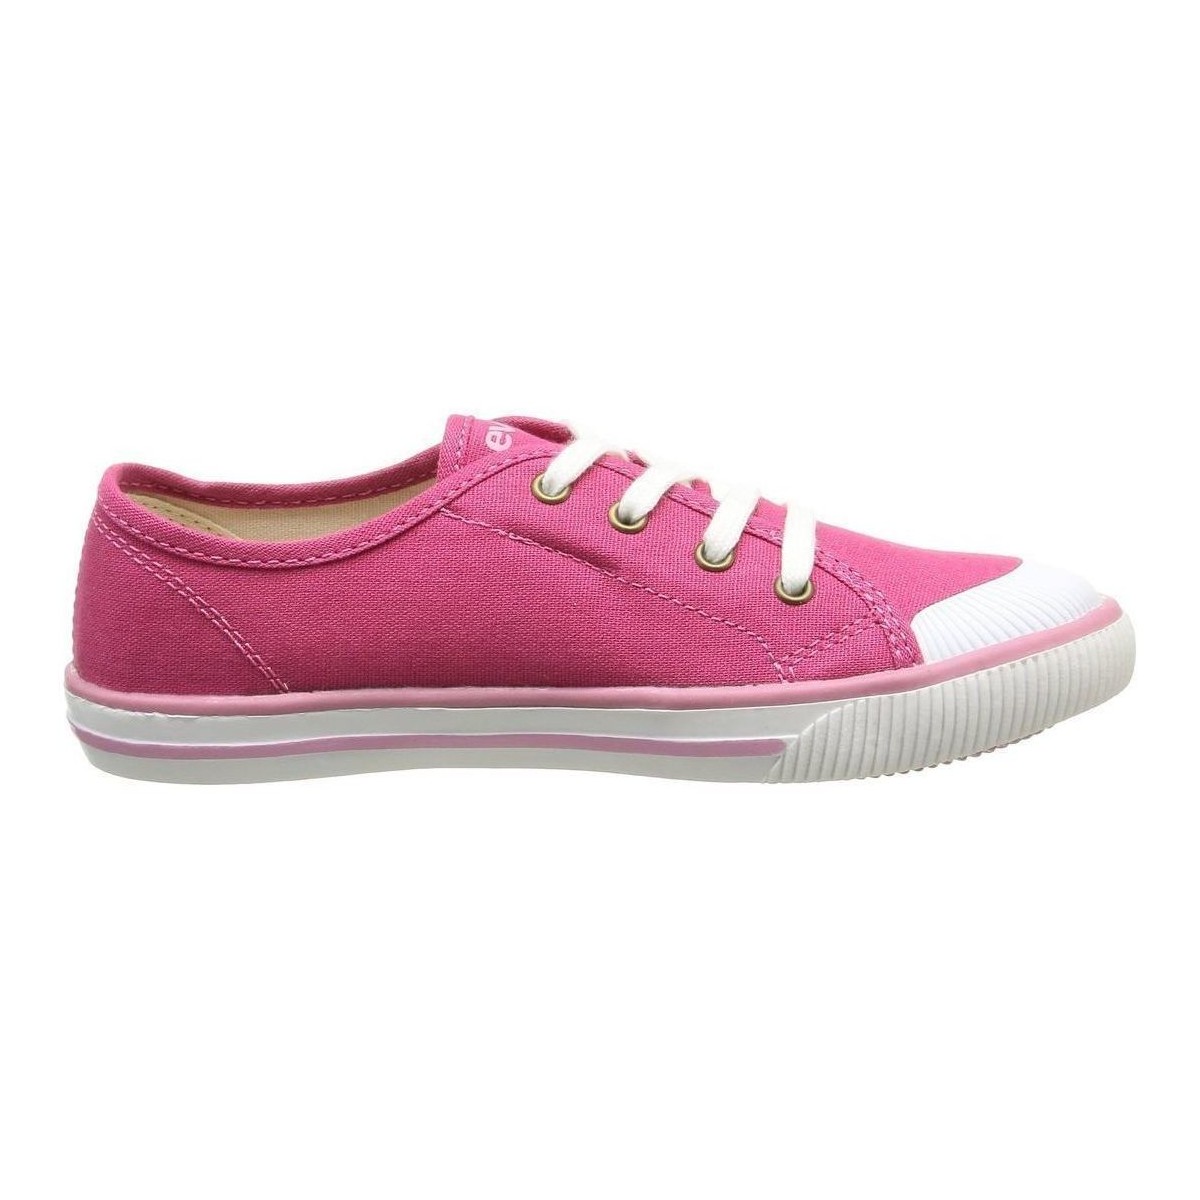 Sko Pige Sneakers Levi's GONG Pink